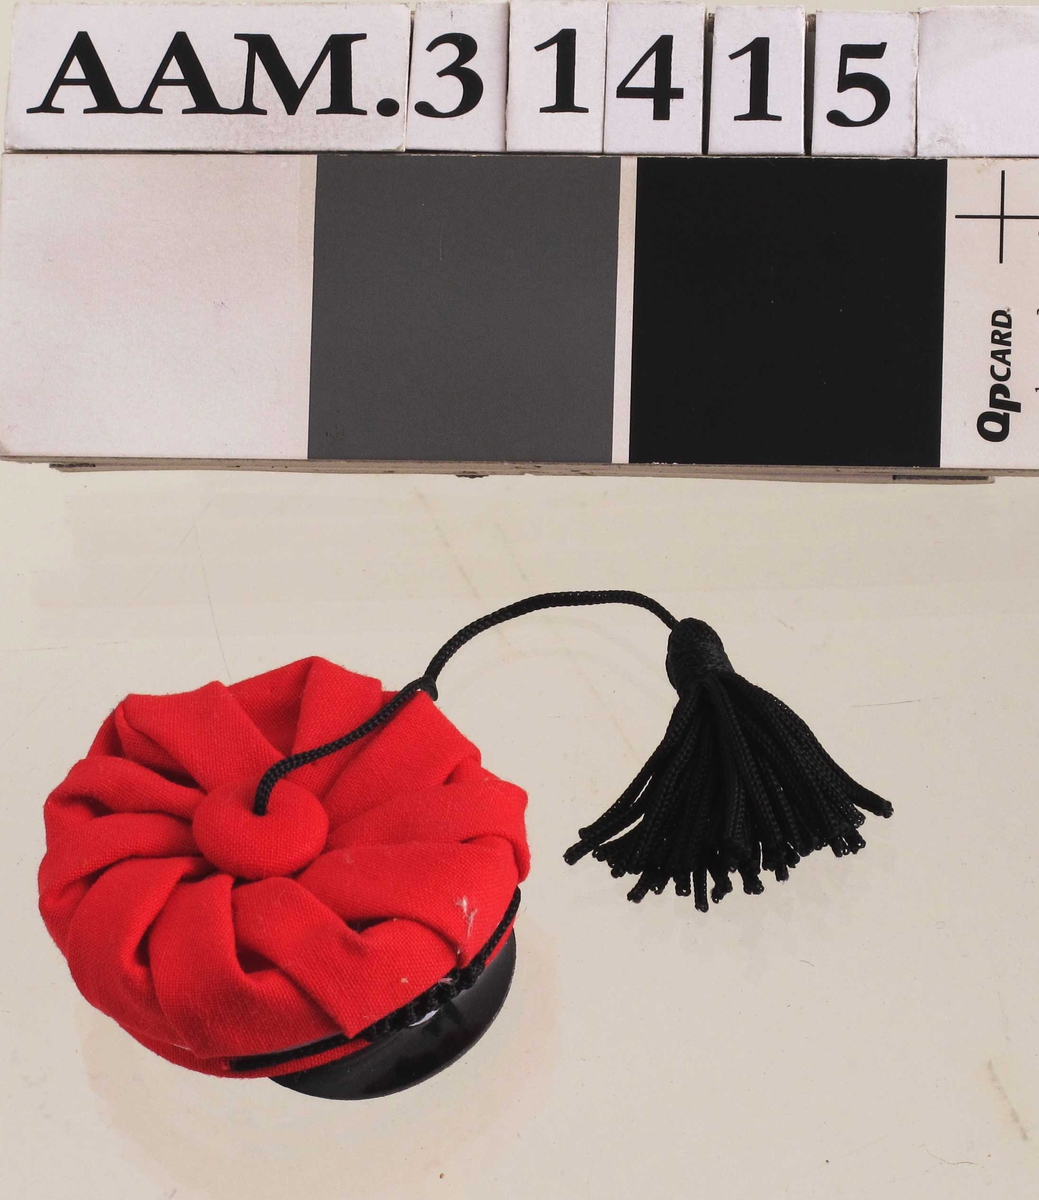 Rød russelue, svart brem, svart dusk i lang tråd .  Over bremmen et emblem av "silke" med sirkler i fargene hvit, blå og rød.  Over emblemet en sort snor med fletting på midten.  

Miniatyr